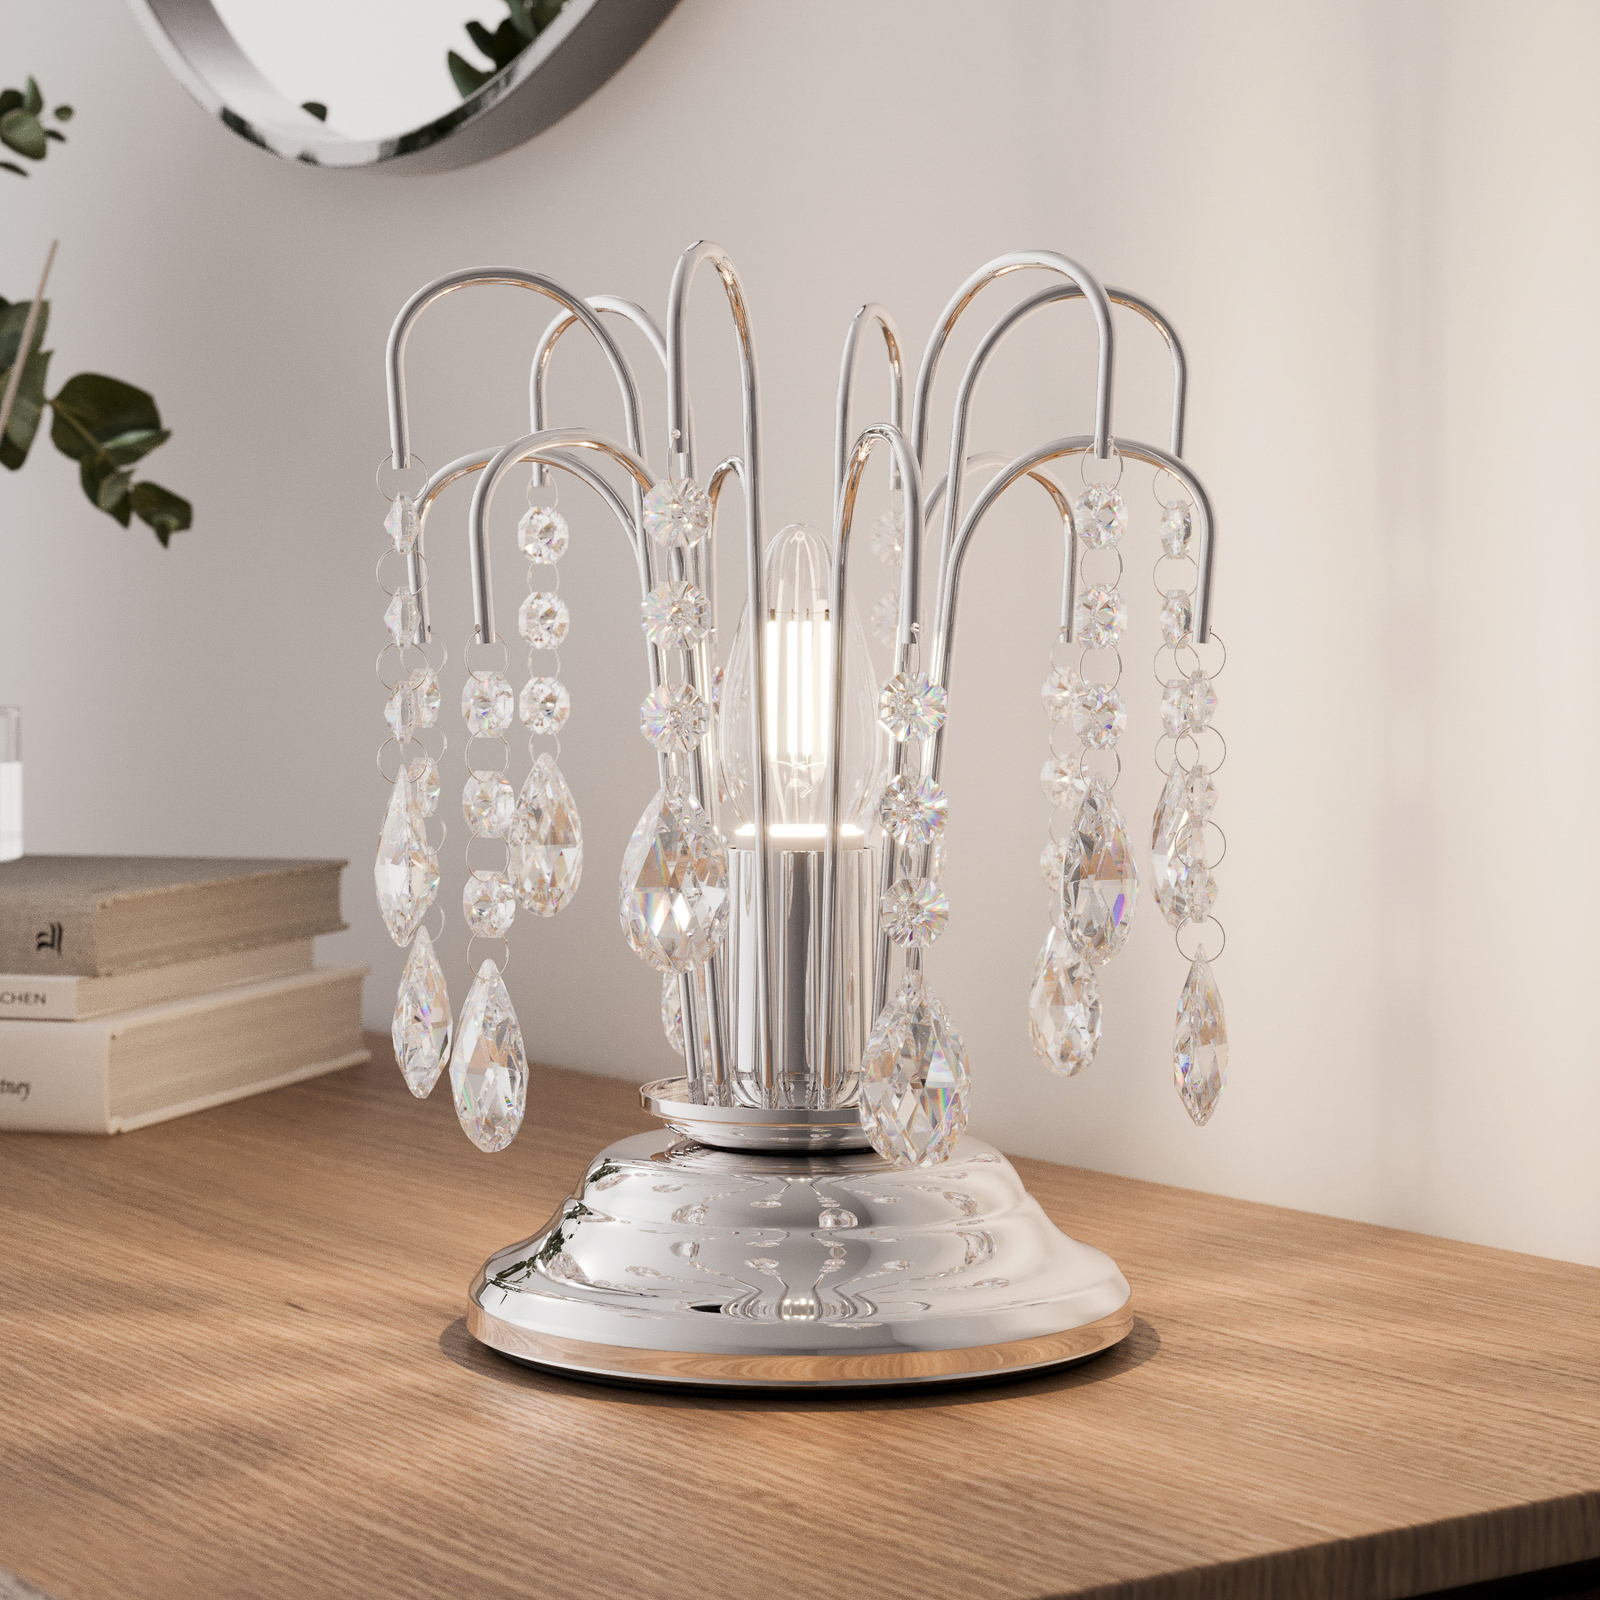 Bordslampa Pioggia med kristallregn, 26 cm, krom